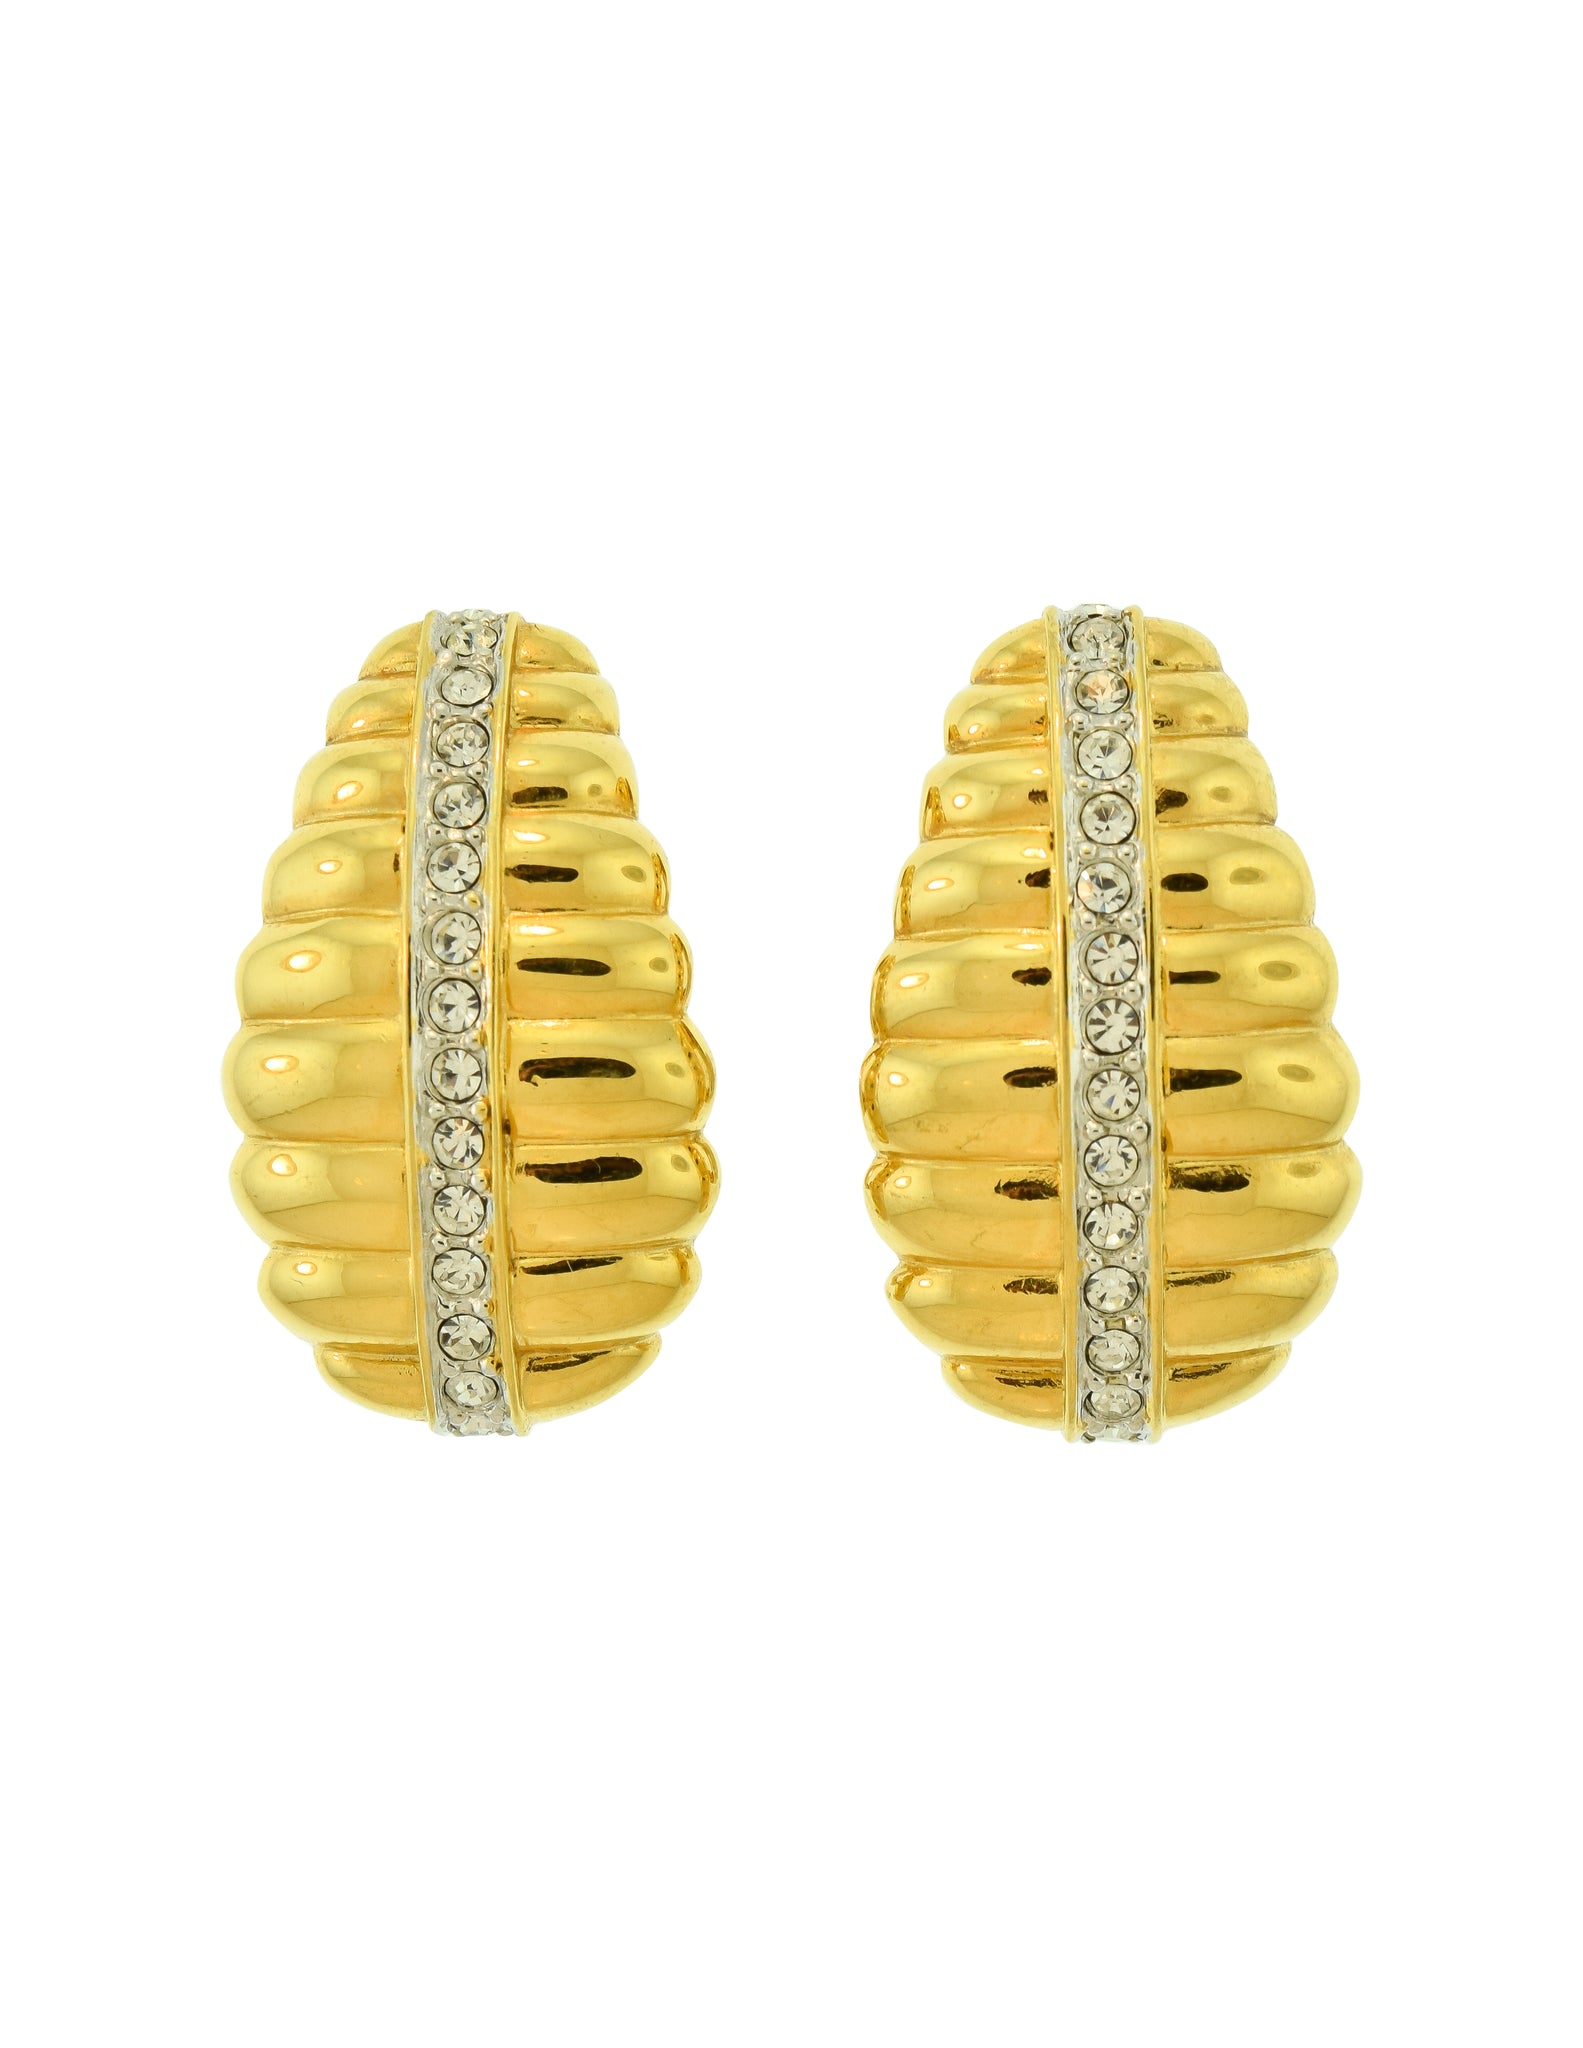 Nolan Miller Vintage Golden Rhinestone Beehive Earrings